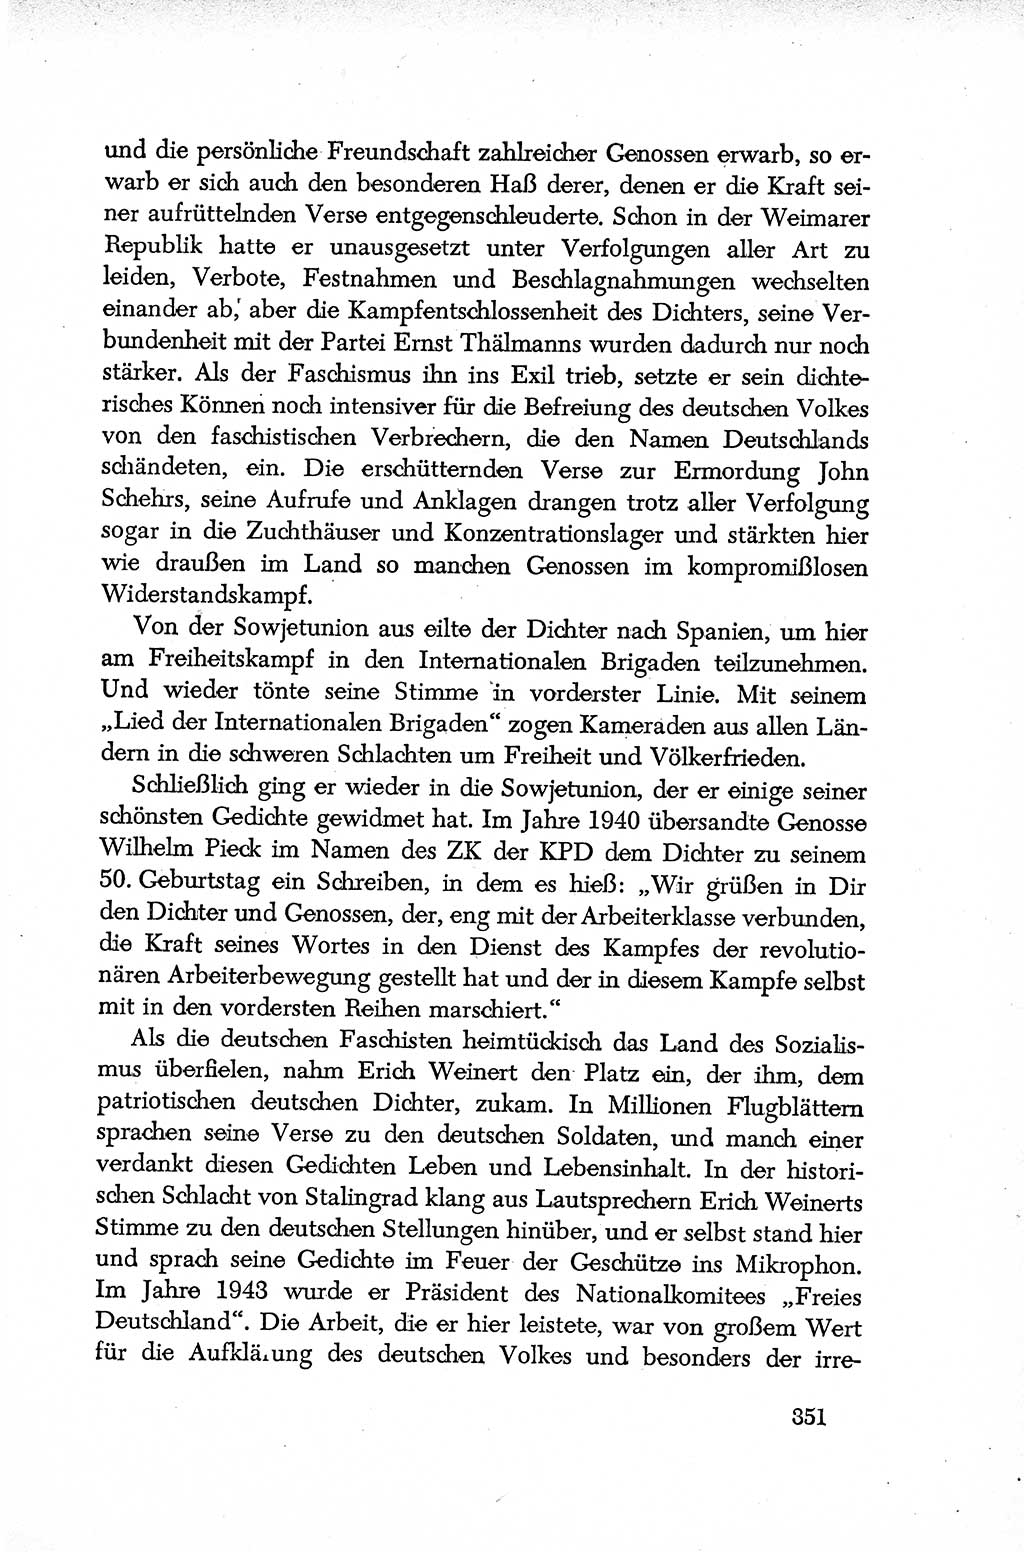 Dokumente der Sozialistischen Einheitspartei Deutschlands (SED) [Deutsche Demokratische Republik (DDR)] 1952-1953, Seite 351 (Dok. SED DDR 1952-1953, S. 351)